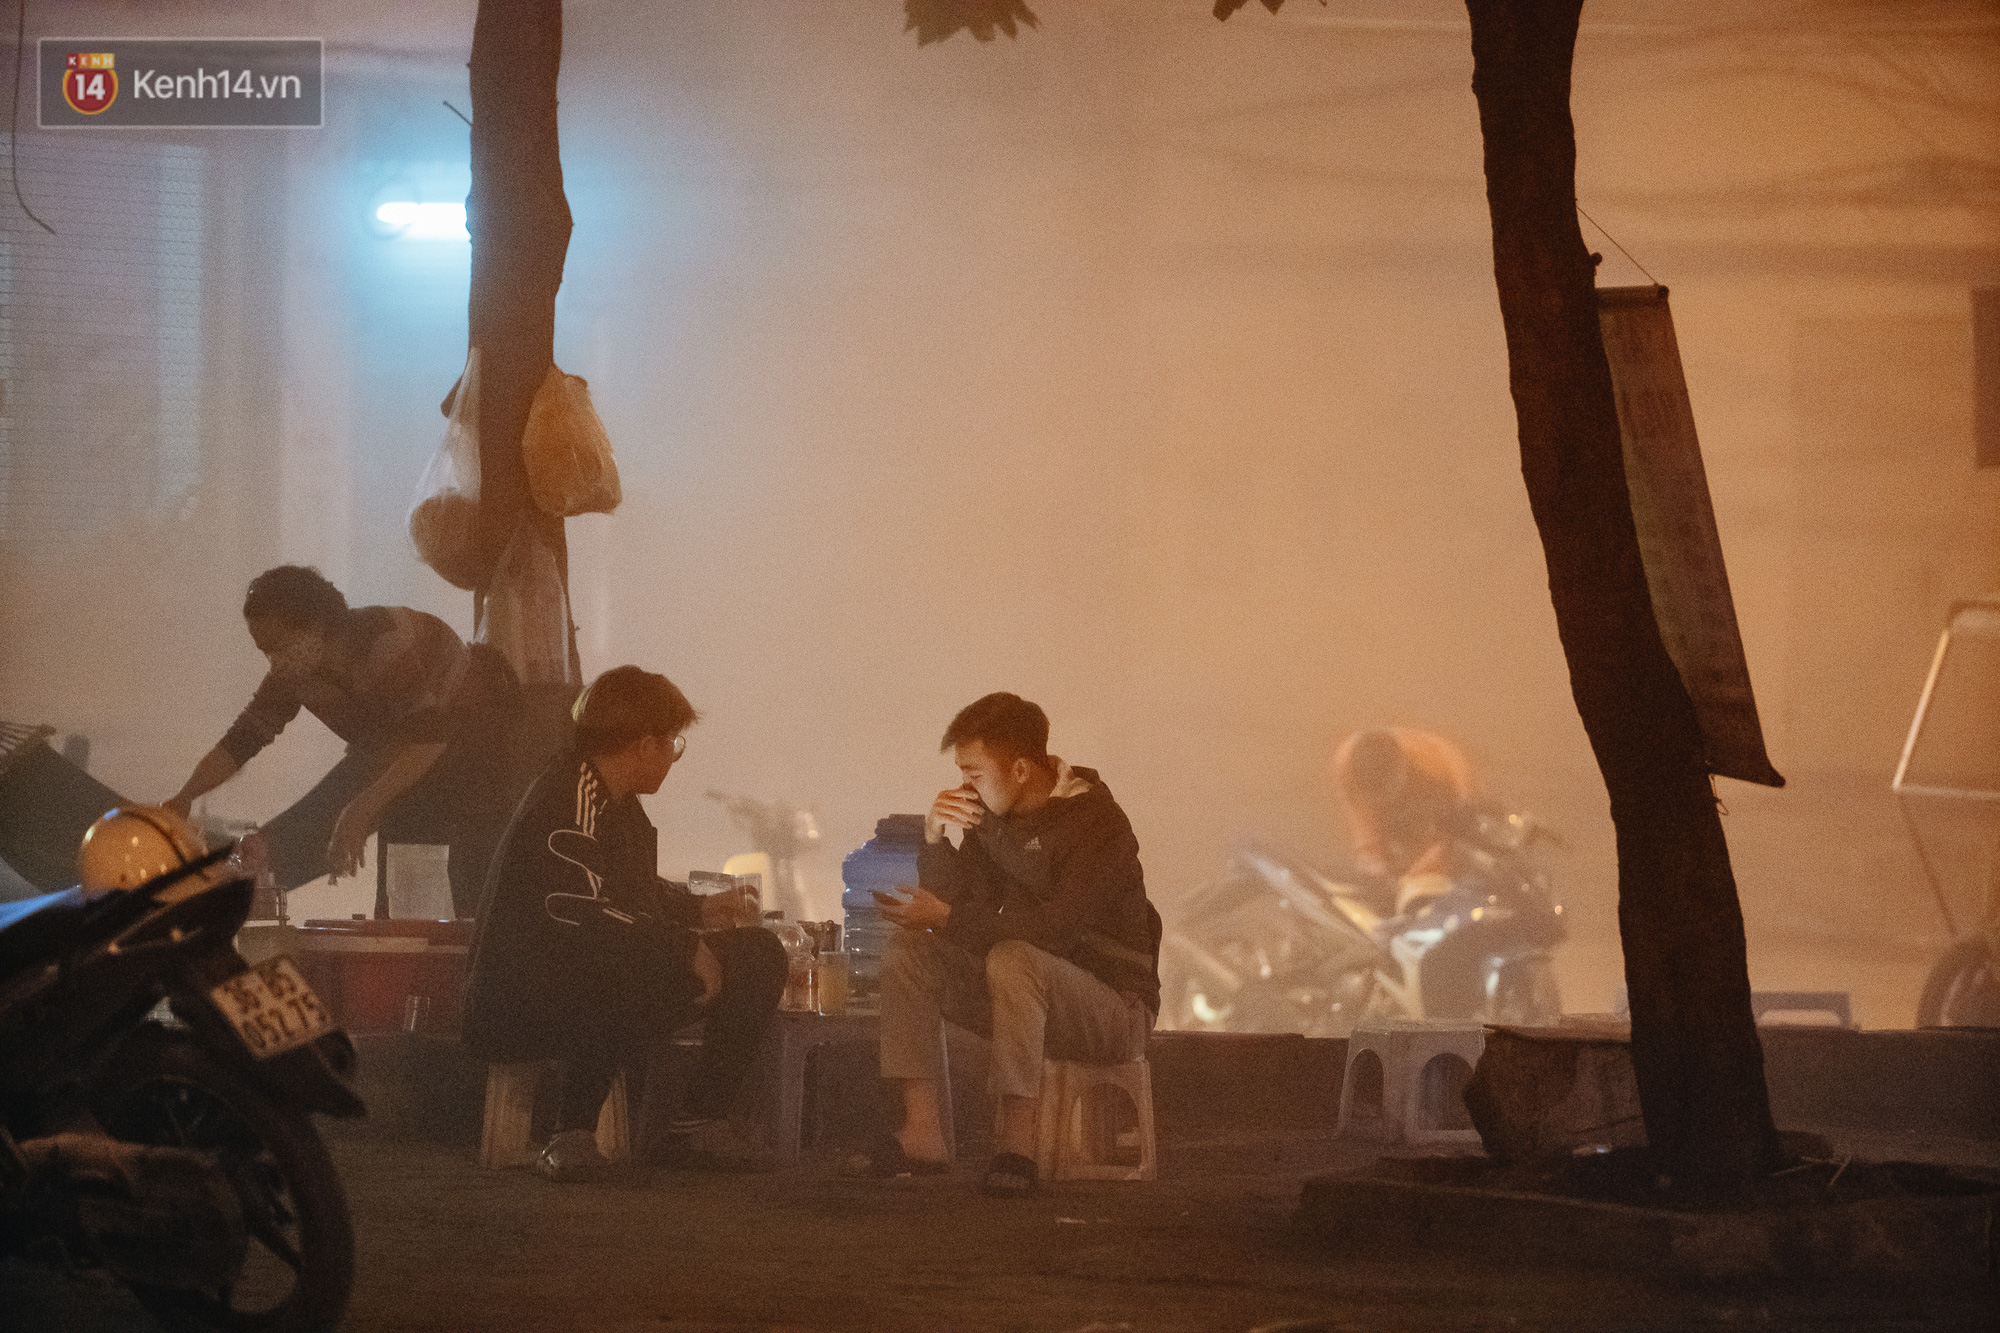 Hà Nội có lẽ bụi nhất về đêm: Nhóm công nhân sửa đường thổi bụi thẳng vào mặt người dân - Ảnh 10.